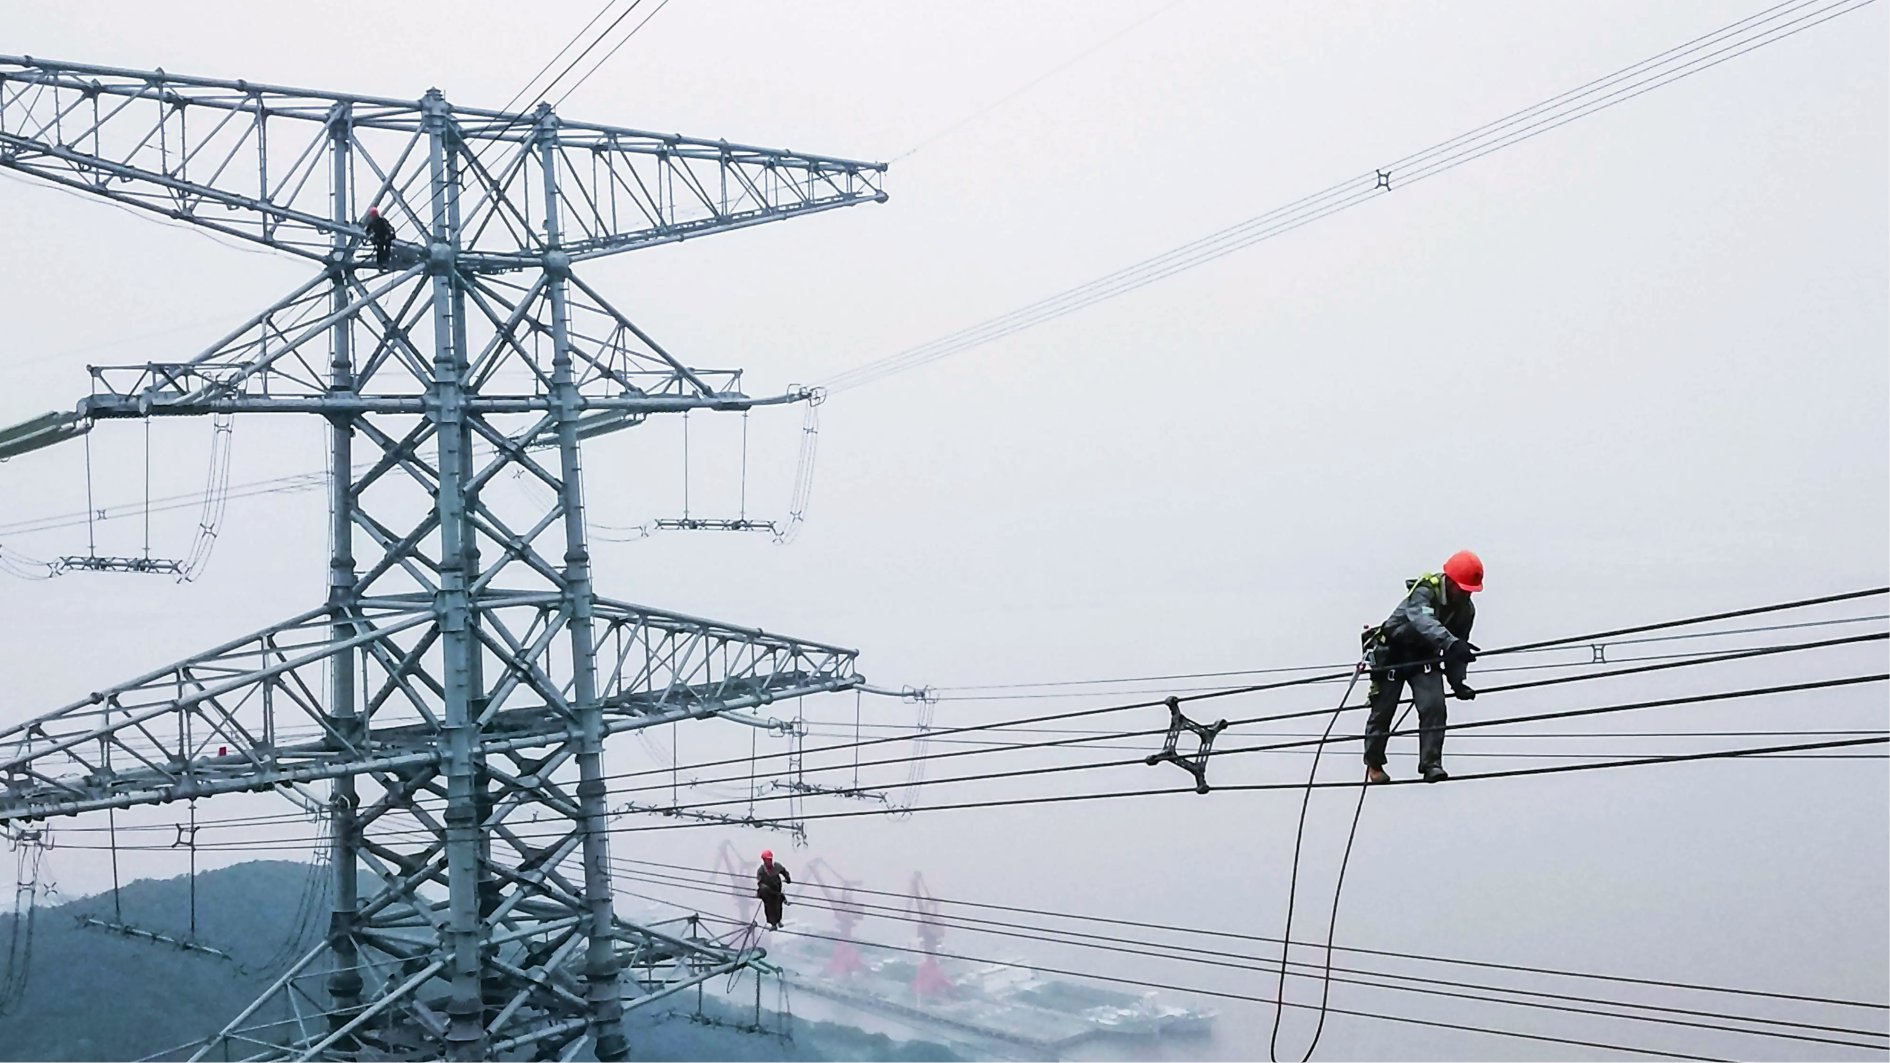 2022-2028年全球輸電市場規模預計超480億美元-淮安振宇電纜樣品有限公司